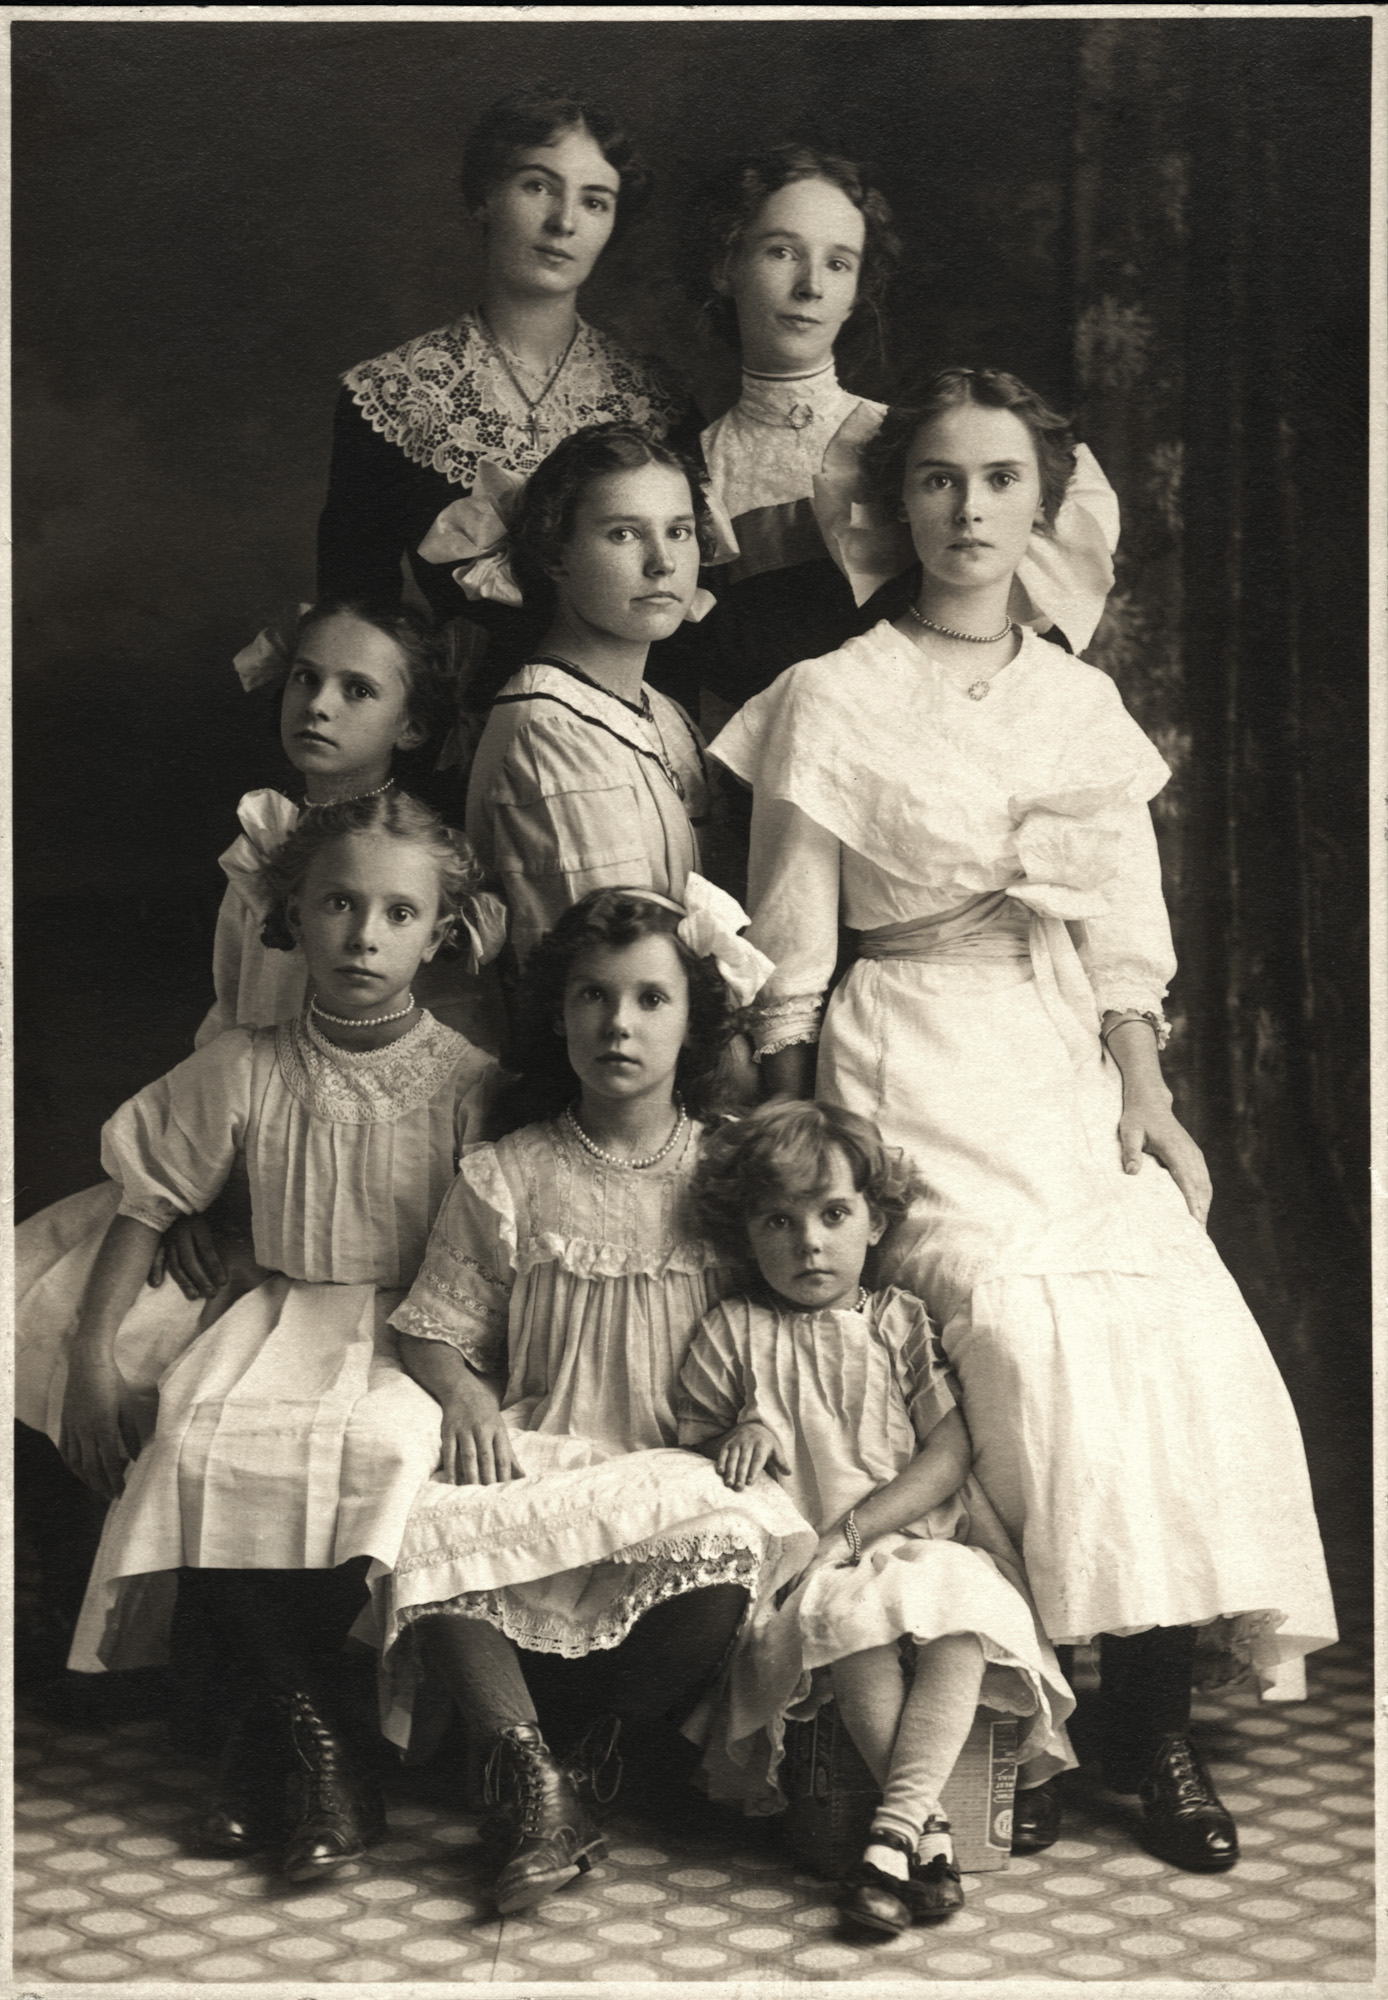 Les soeurs Gaudreau de Stanbridge East, Quebec, 1912. Unknown photographer. View full size.